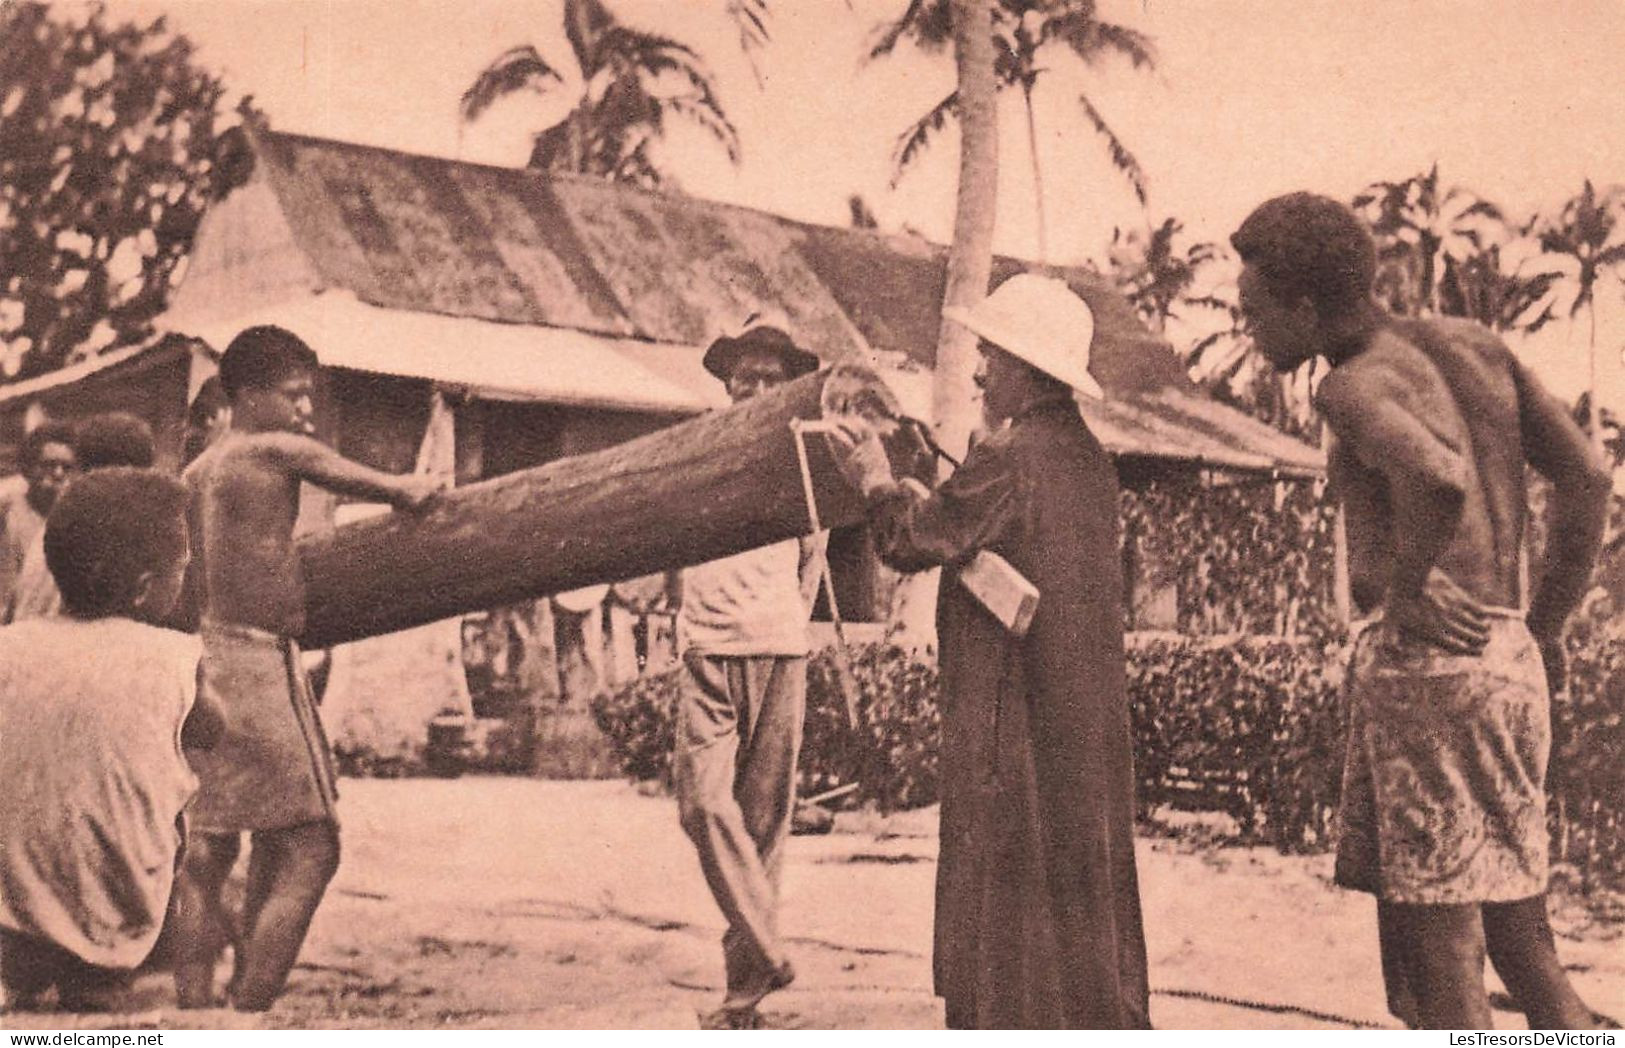 NOUVELLE CALEDONIE - Un Missionnaire Constructeur - Missions D'Océanie - Animé - Carte Postale Ancienne - Nuova Caledonia